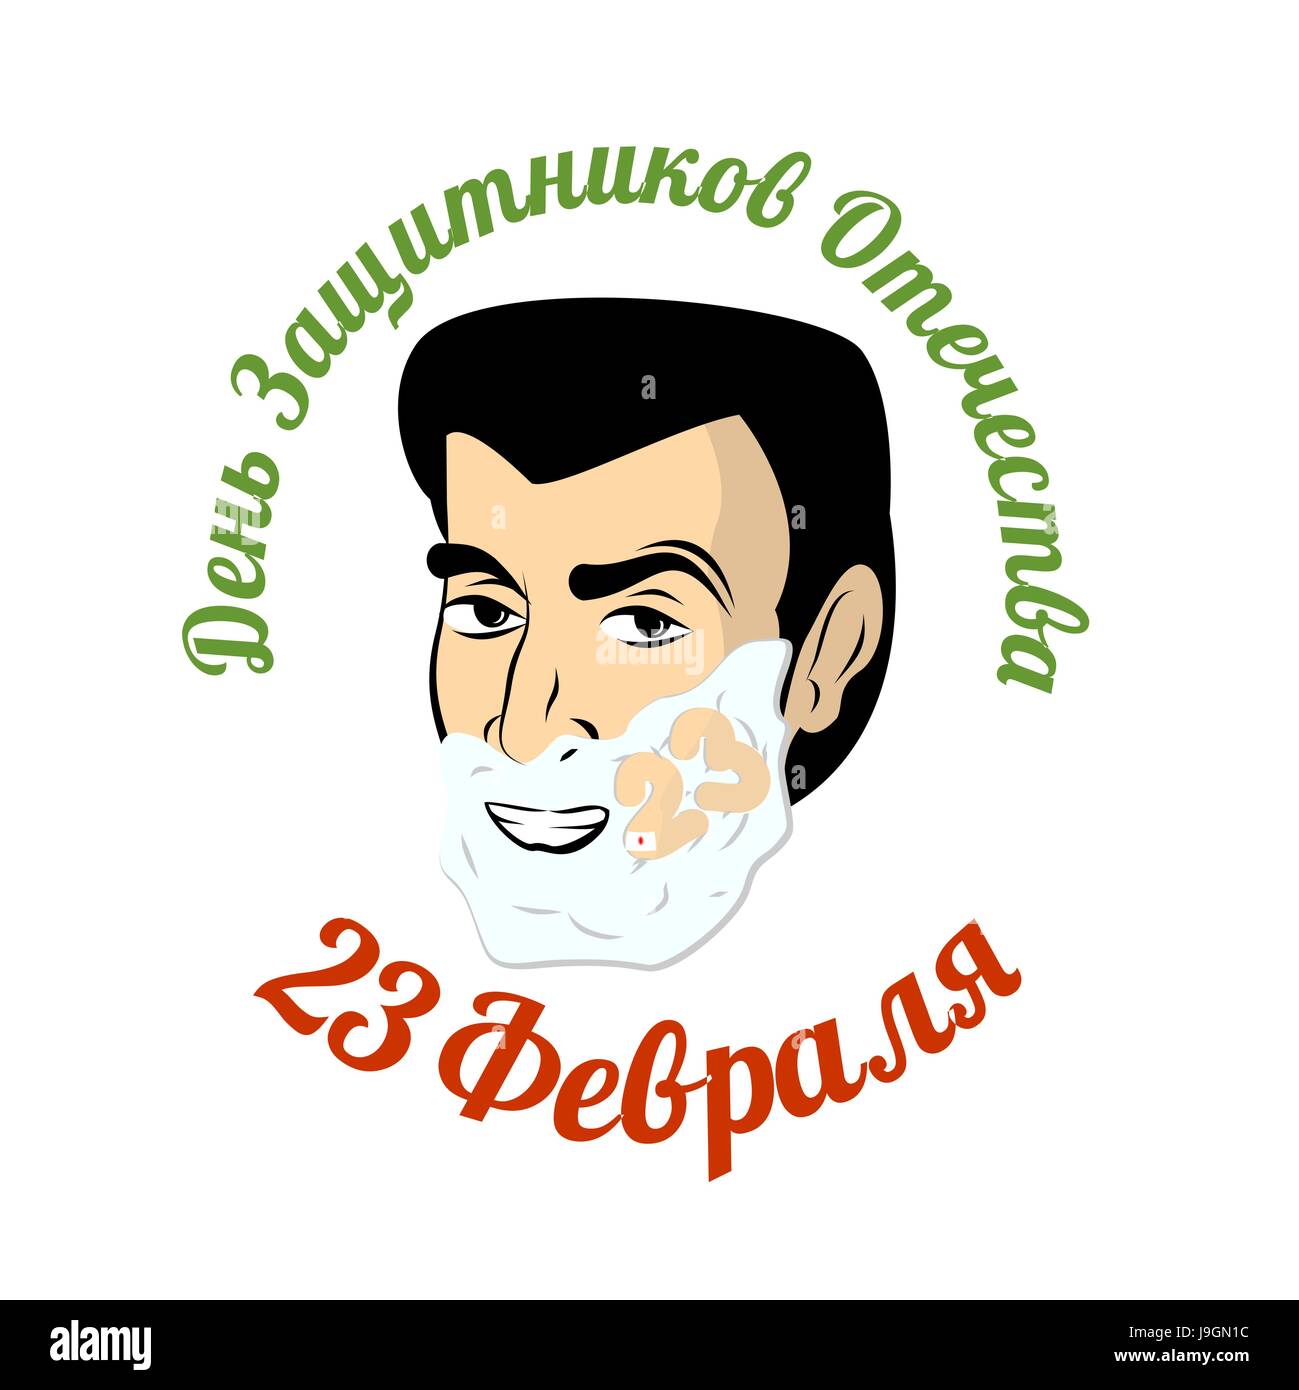 Image result for shaving cream logo